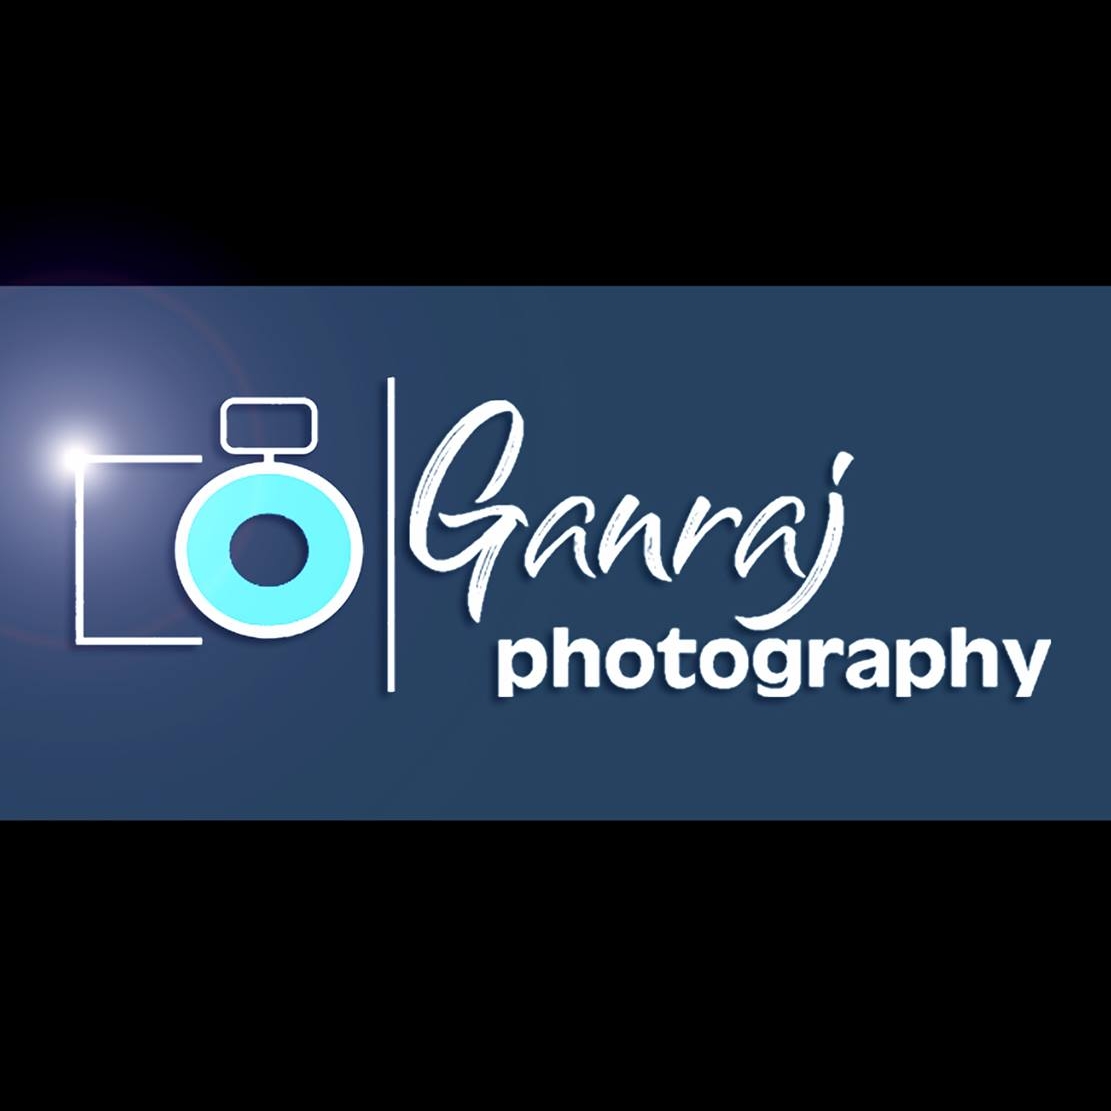 Ganraj photography - Logo